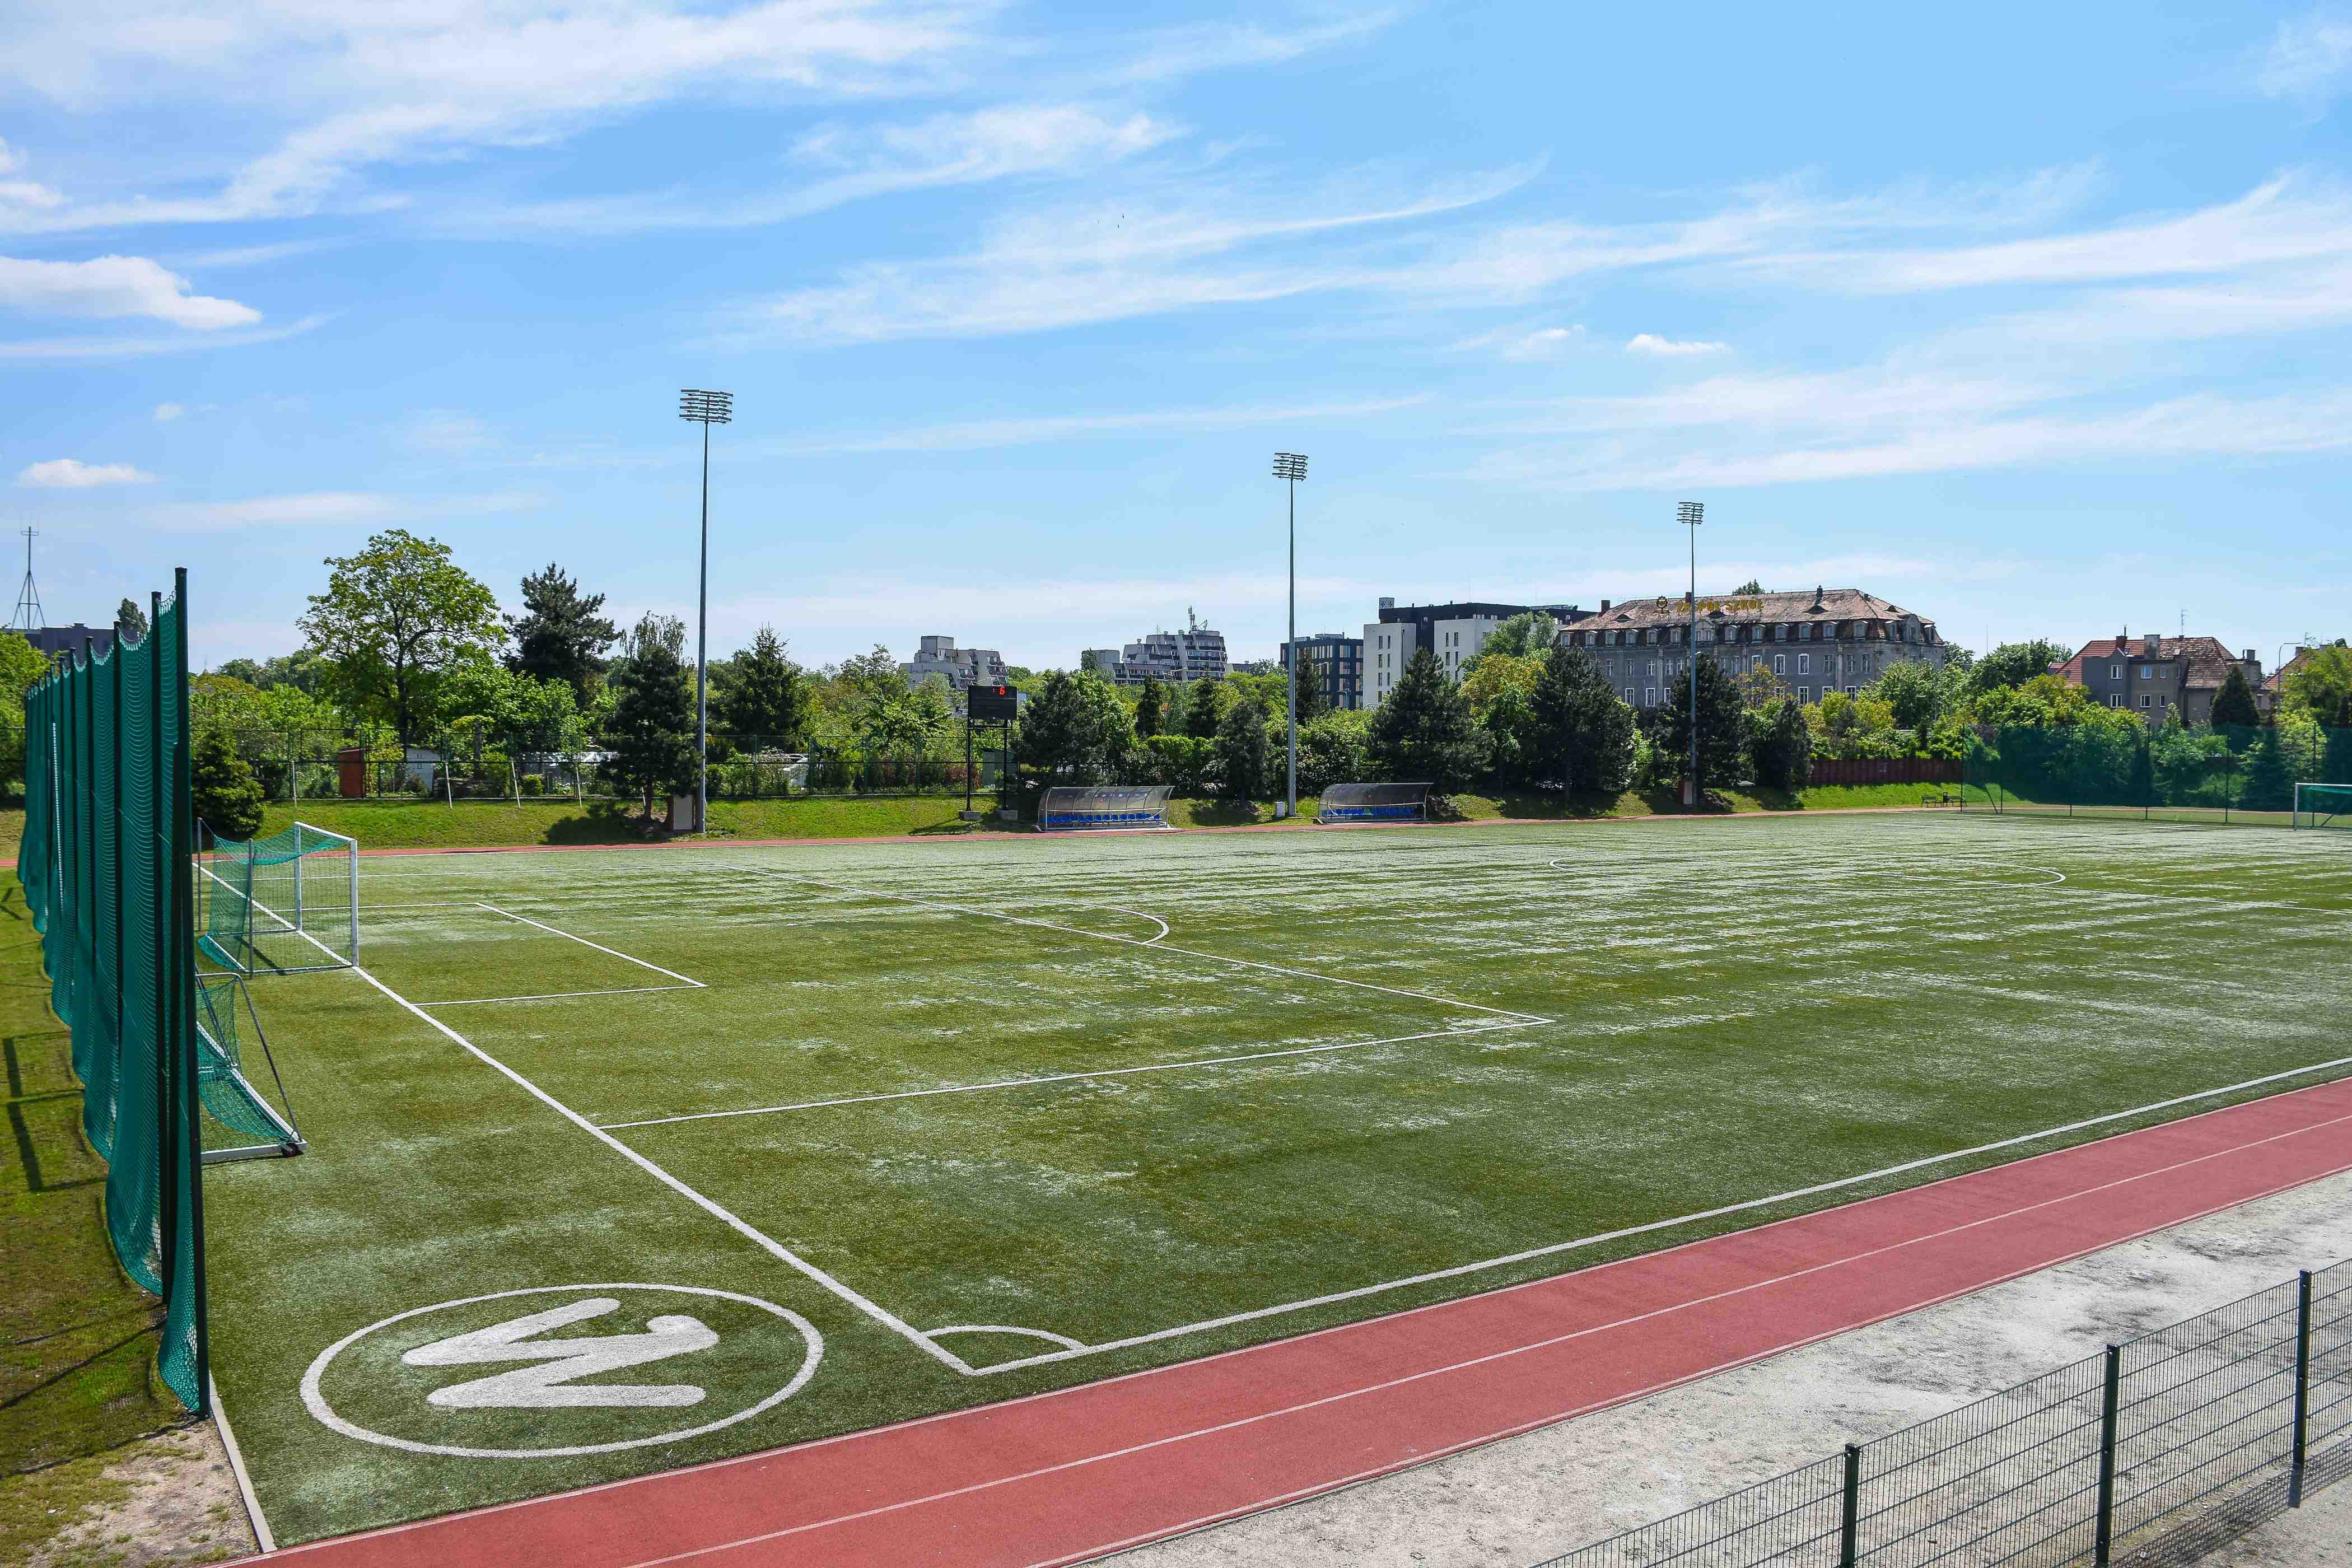 Godziny otwarcia bieżni lekkoatletycznej i nowy regulamin stadionu piłkarskiego “Sztabowa”